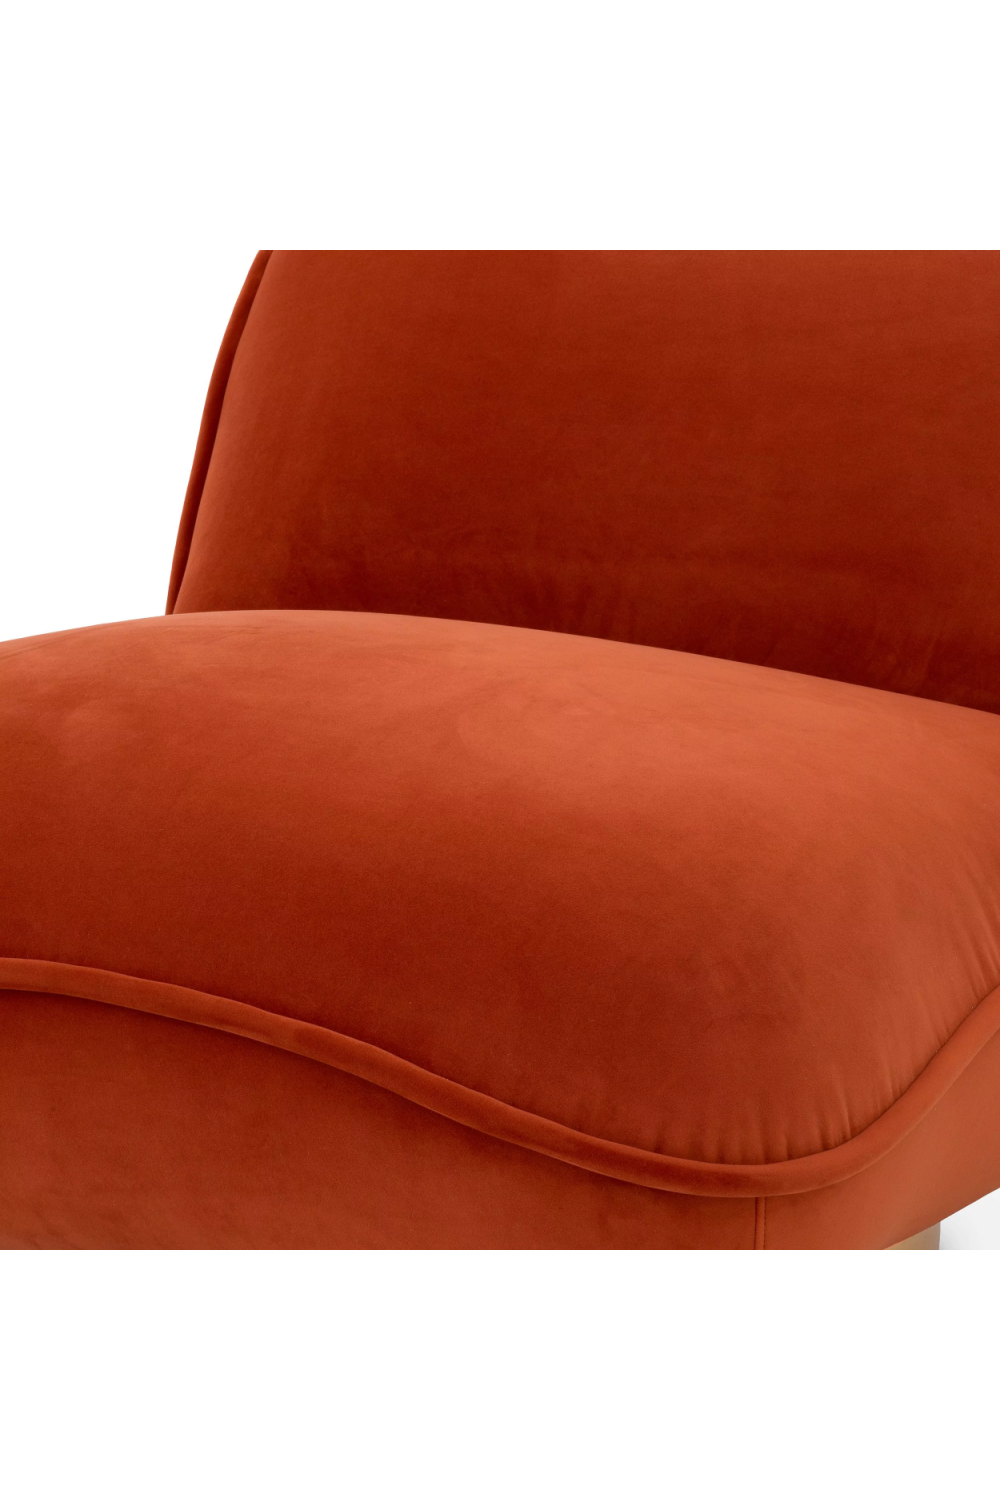 Orange Velvet Pillow Swivel Chair | Eichholtz Relax | Oroa.com